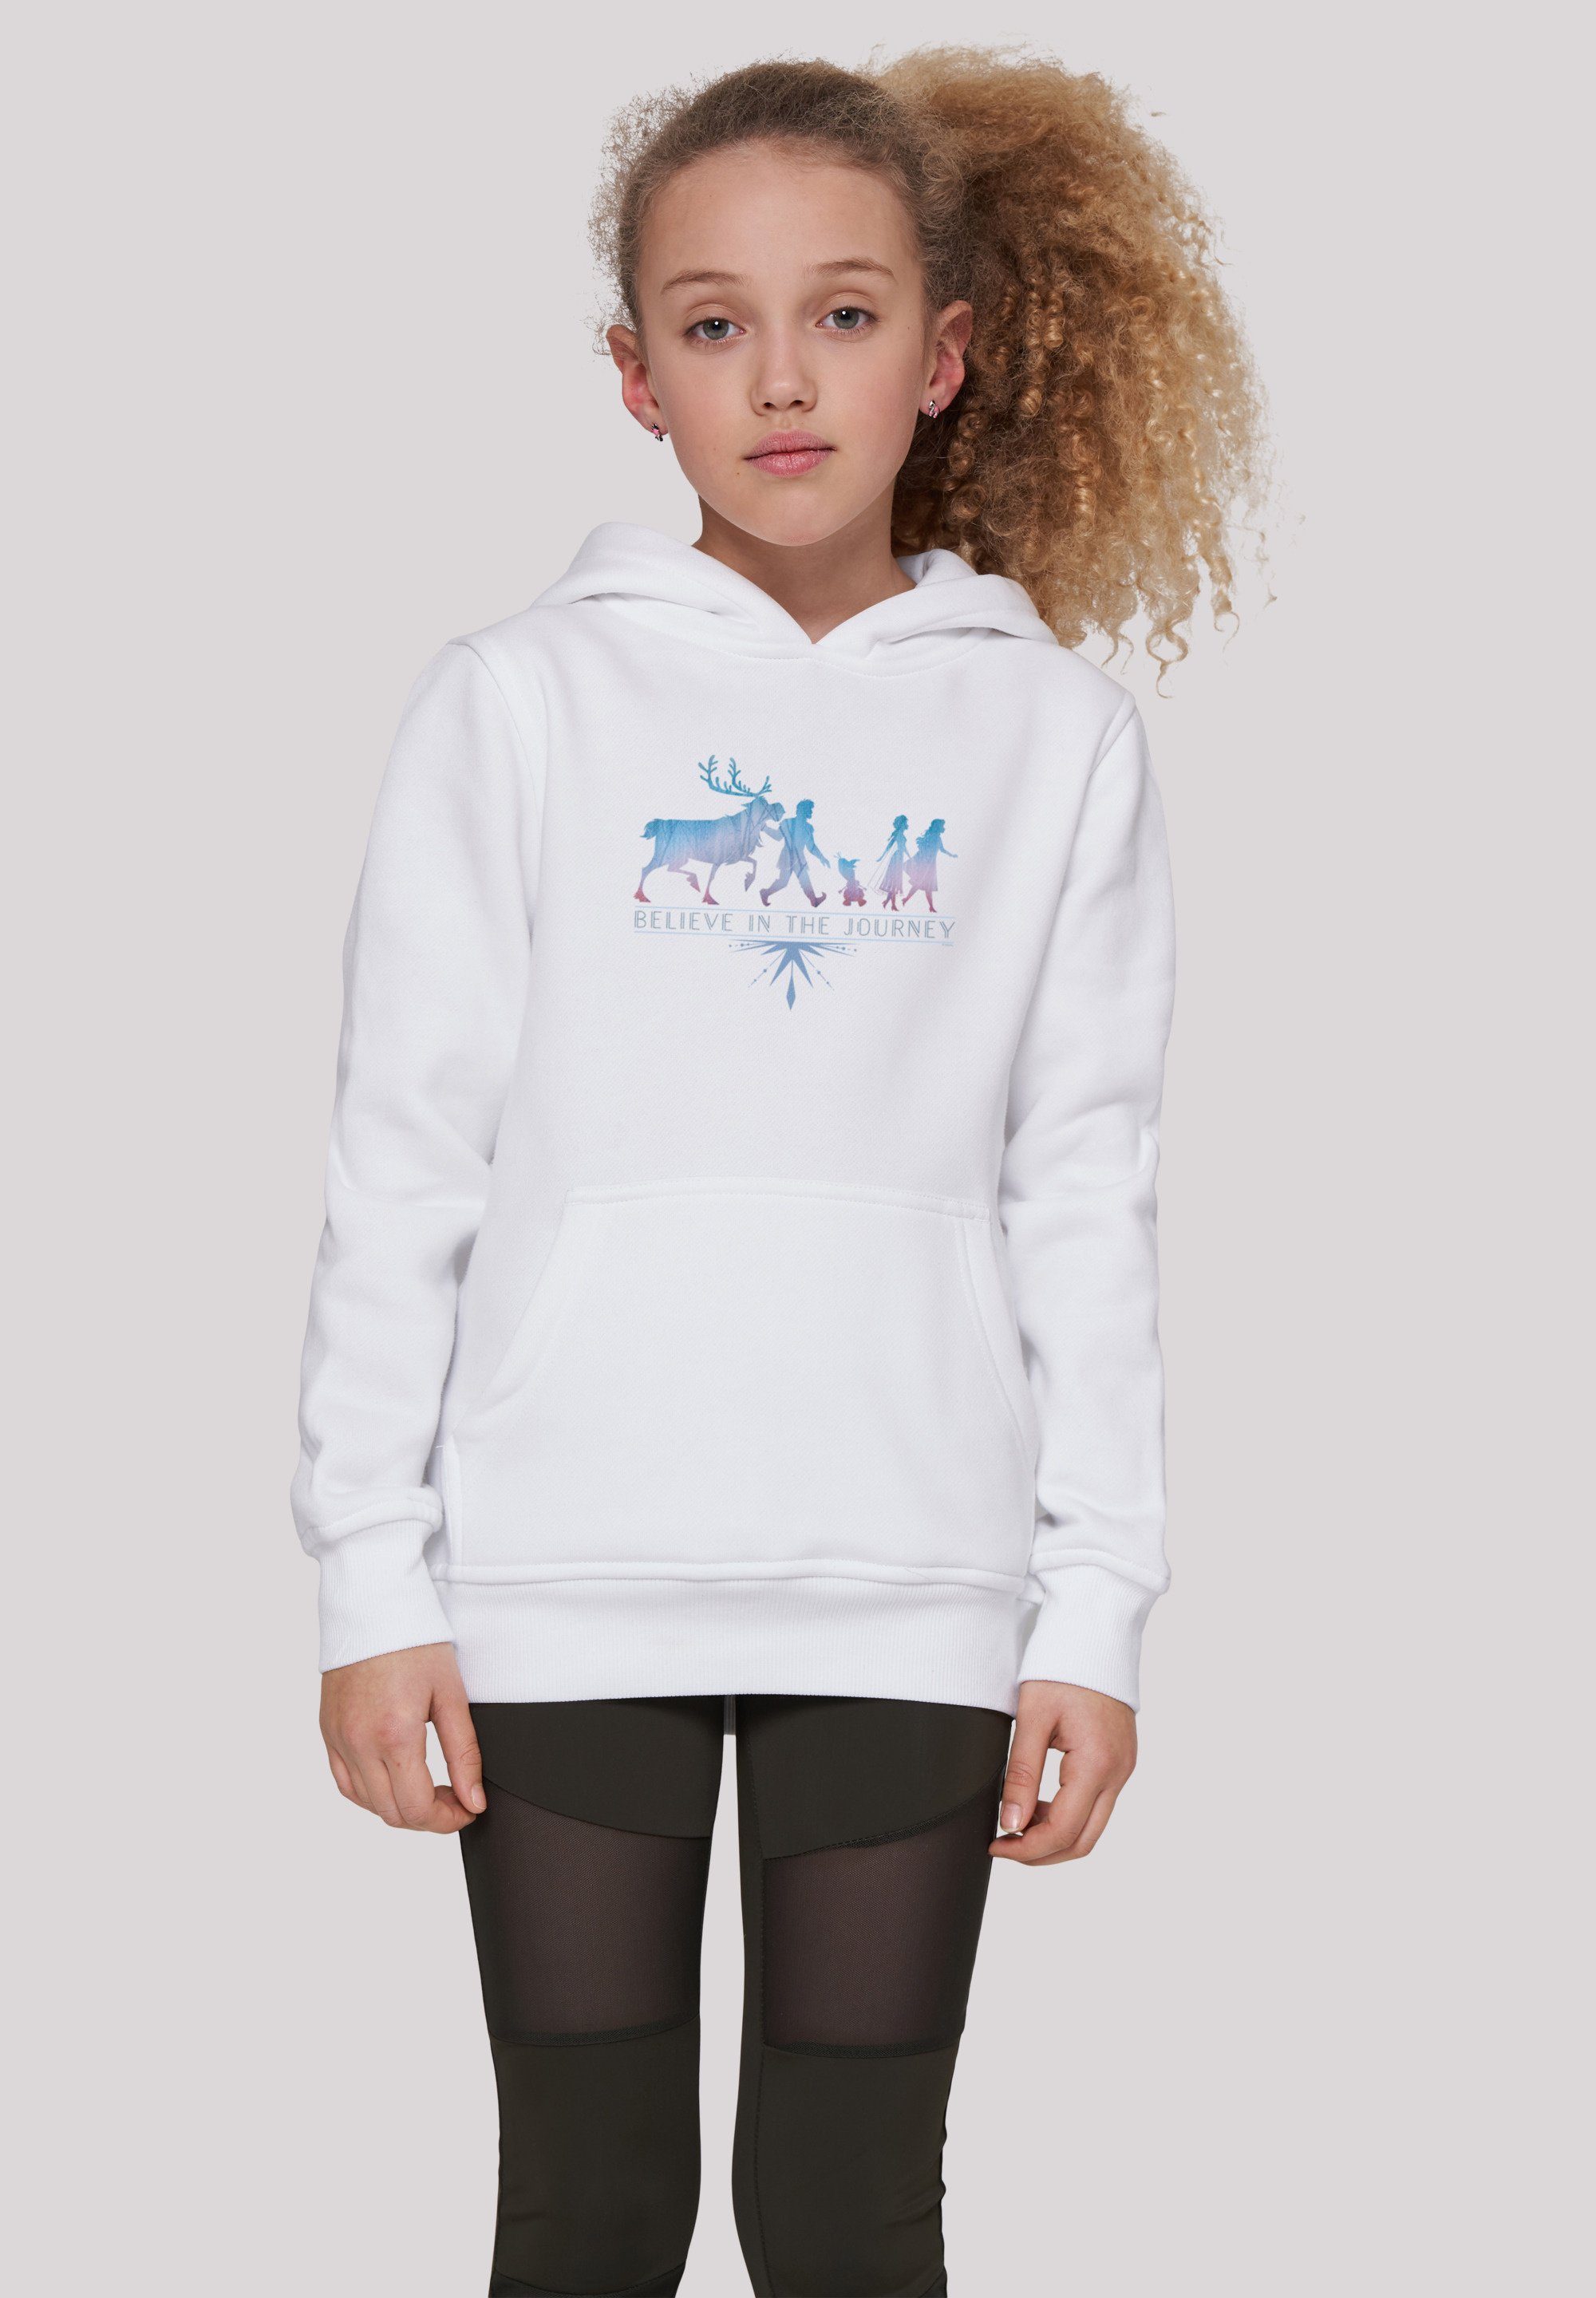 F4NT4STIC Sweatshirt Disney Frozen 2 Believe In The Journey Unisex Kinder,Premium Merch,Jungen,Mädchen,Bedruckt weiß